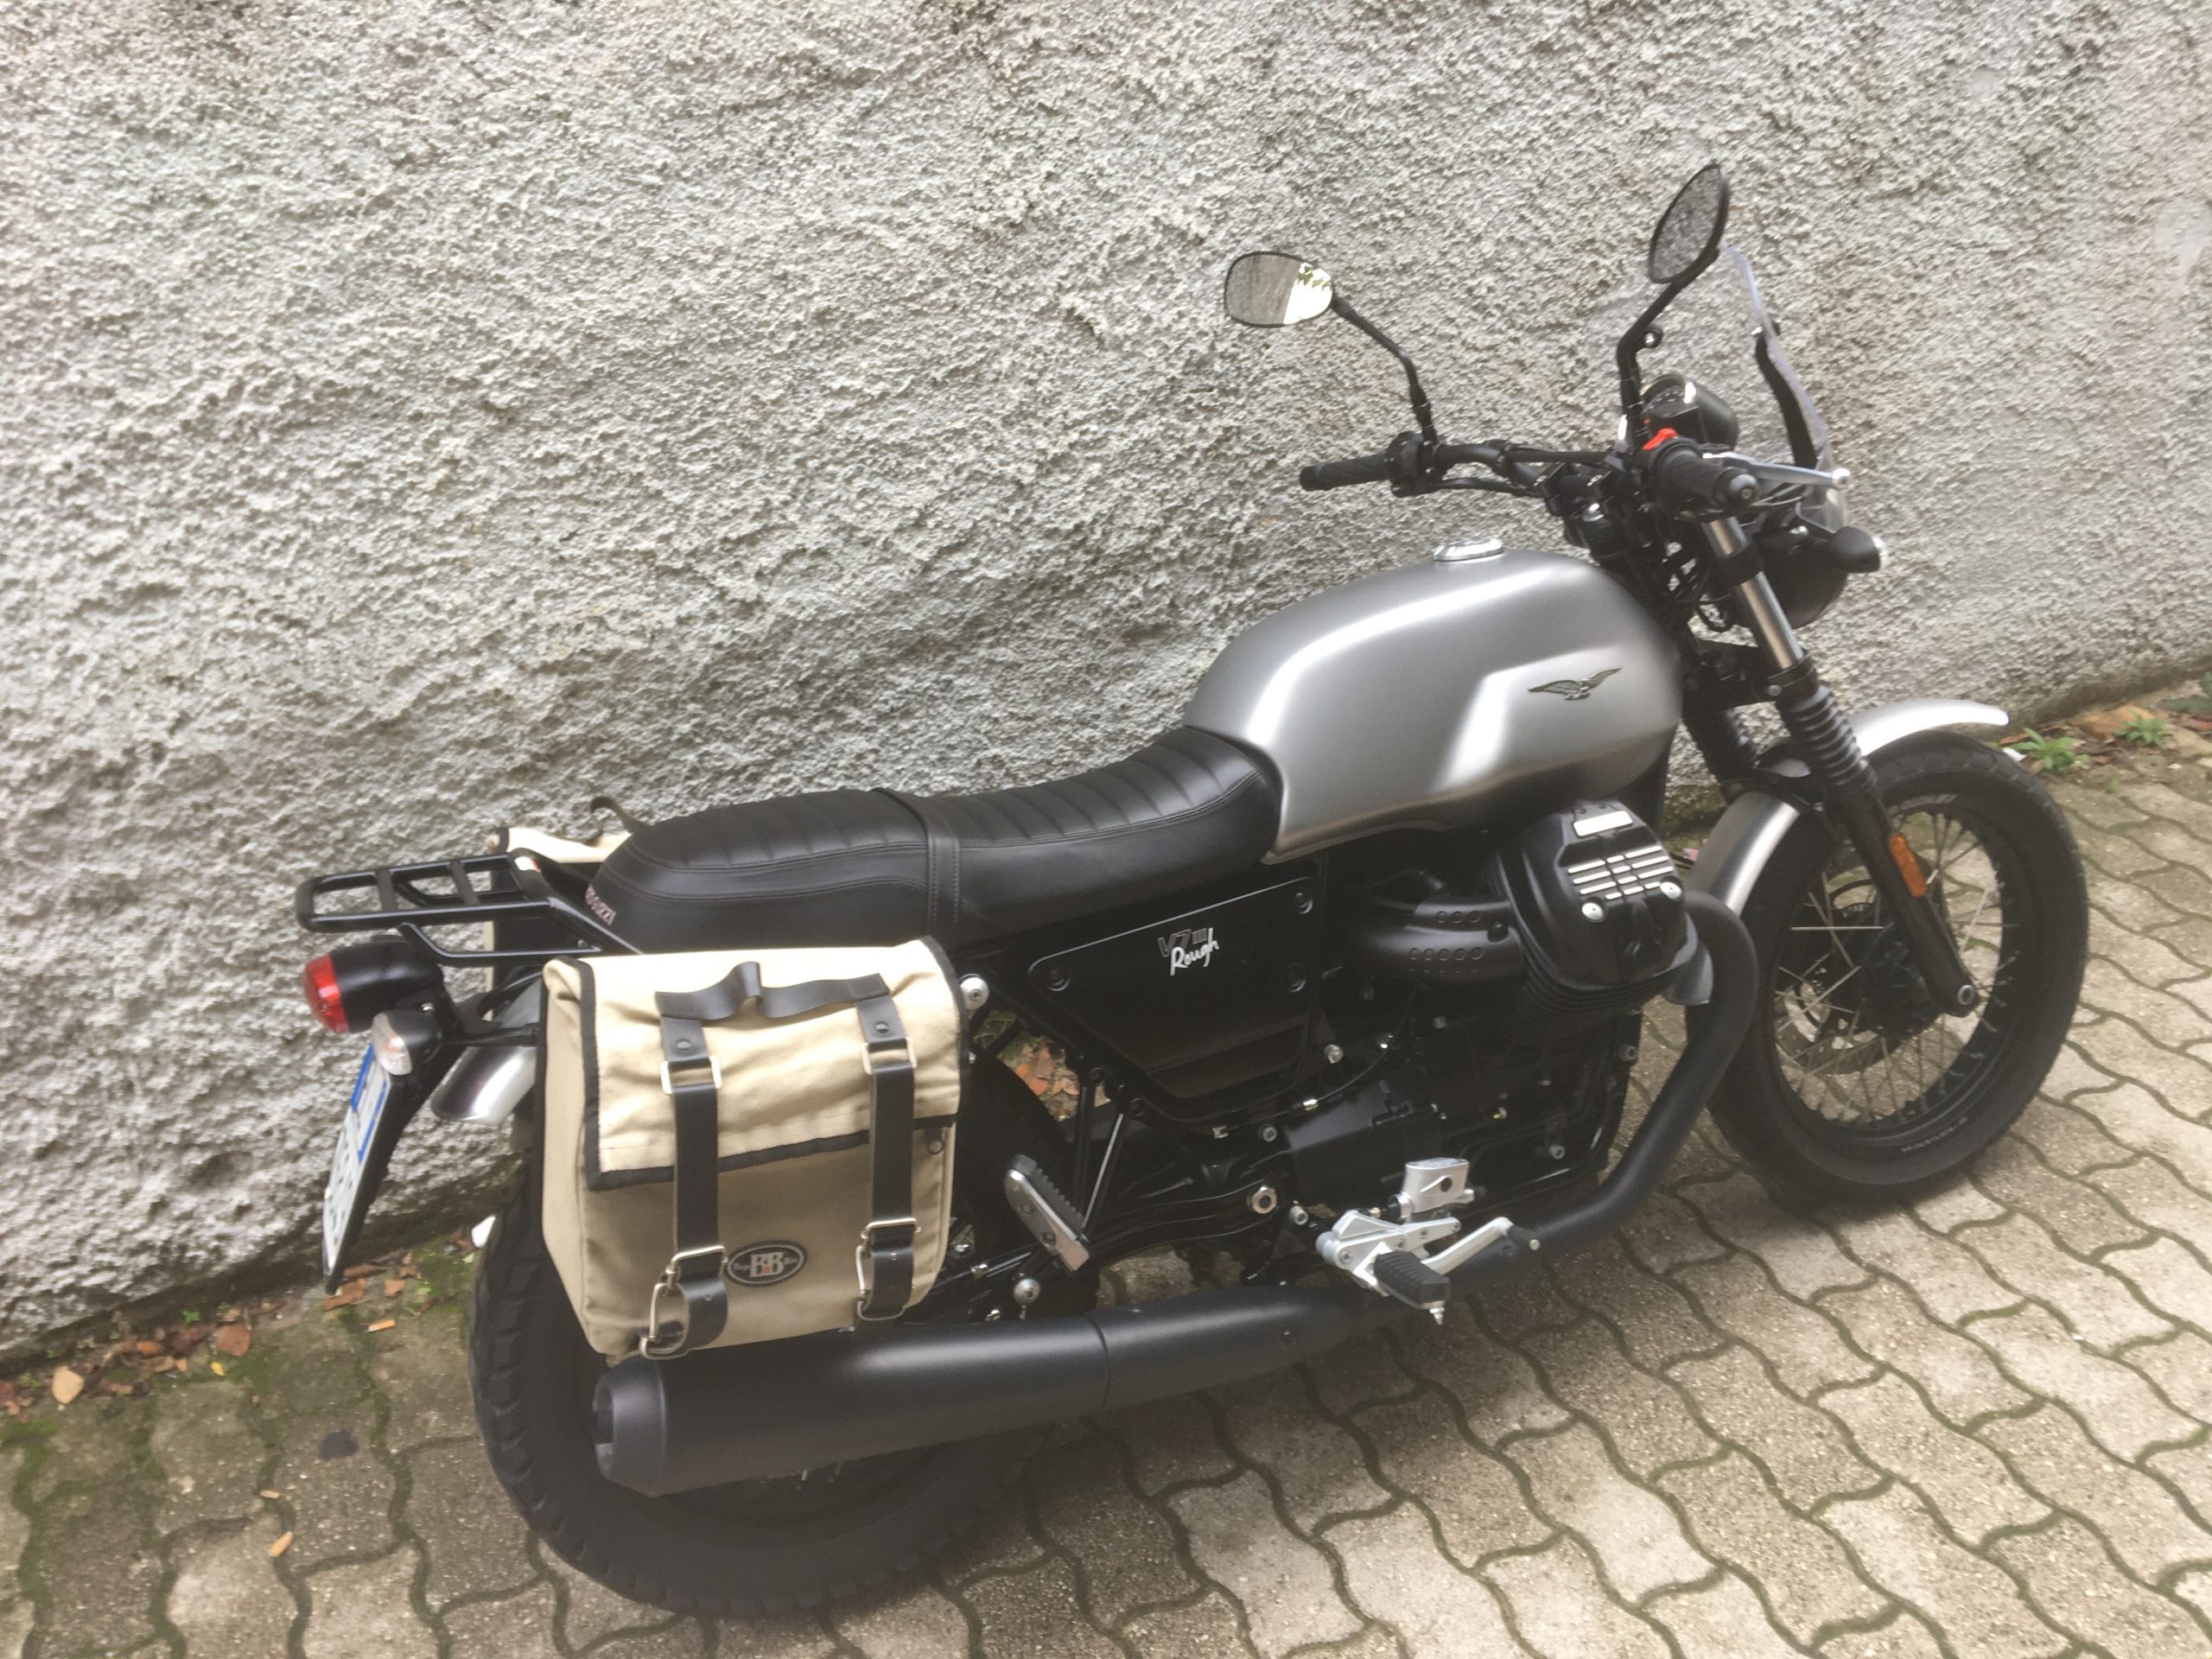 Moto Guzzi V7 III Rough (06/2018) – Km 10700